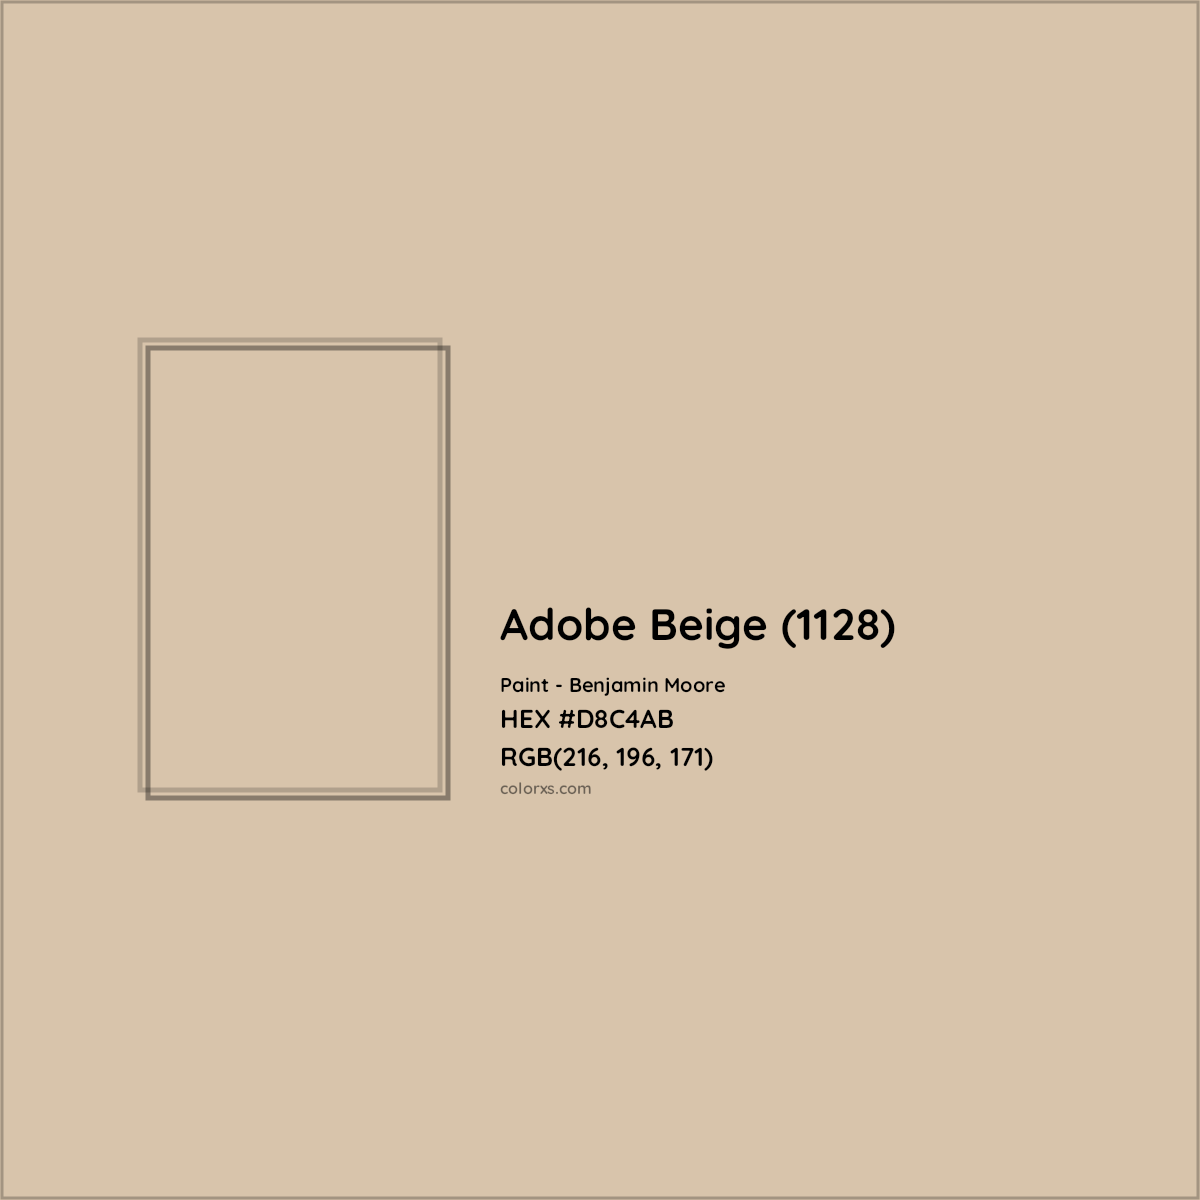 HEX #D8C4AB Adobe Beige (1128) Paint Benjamin Moore - Color Code